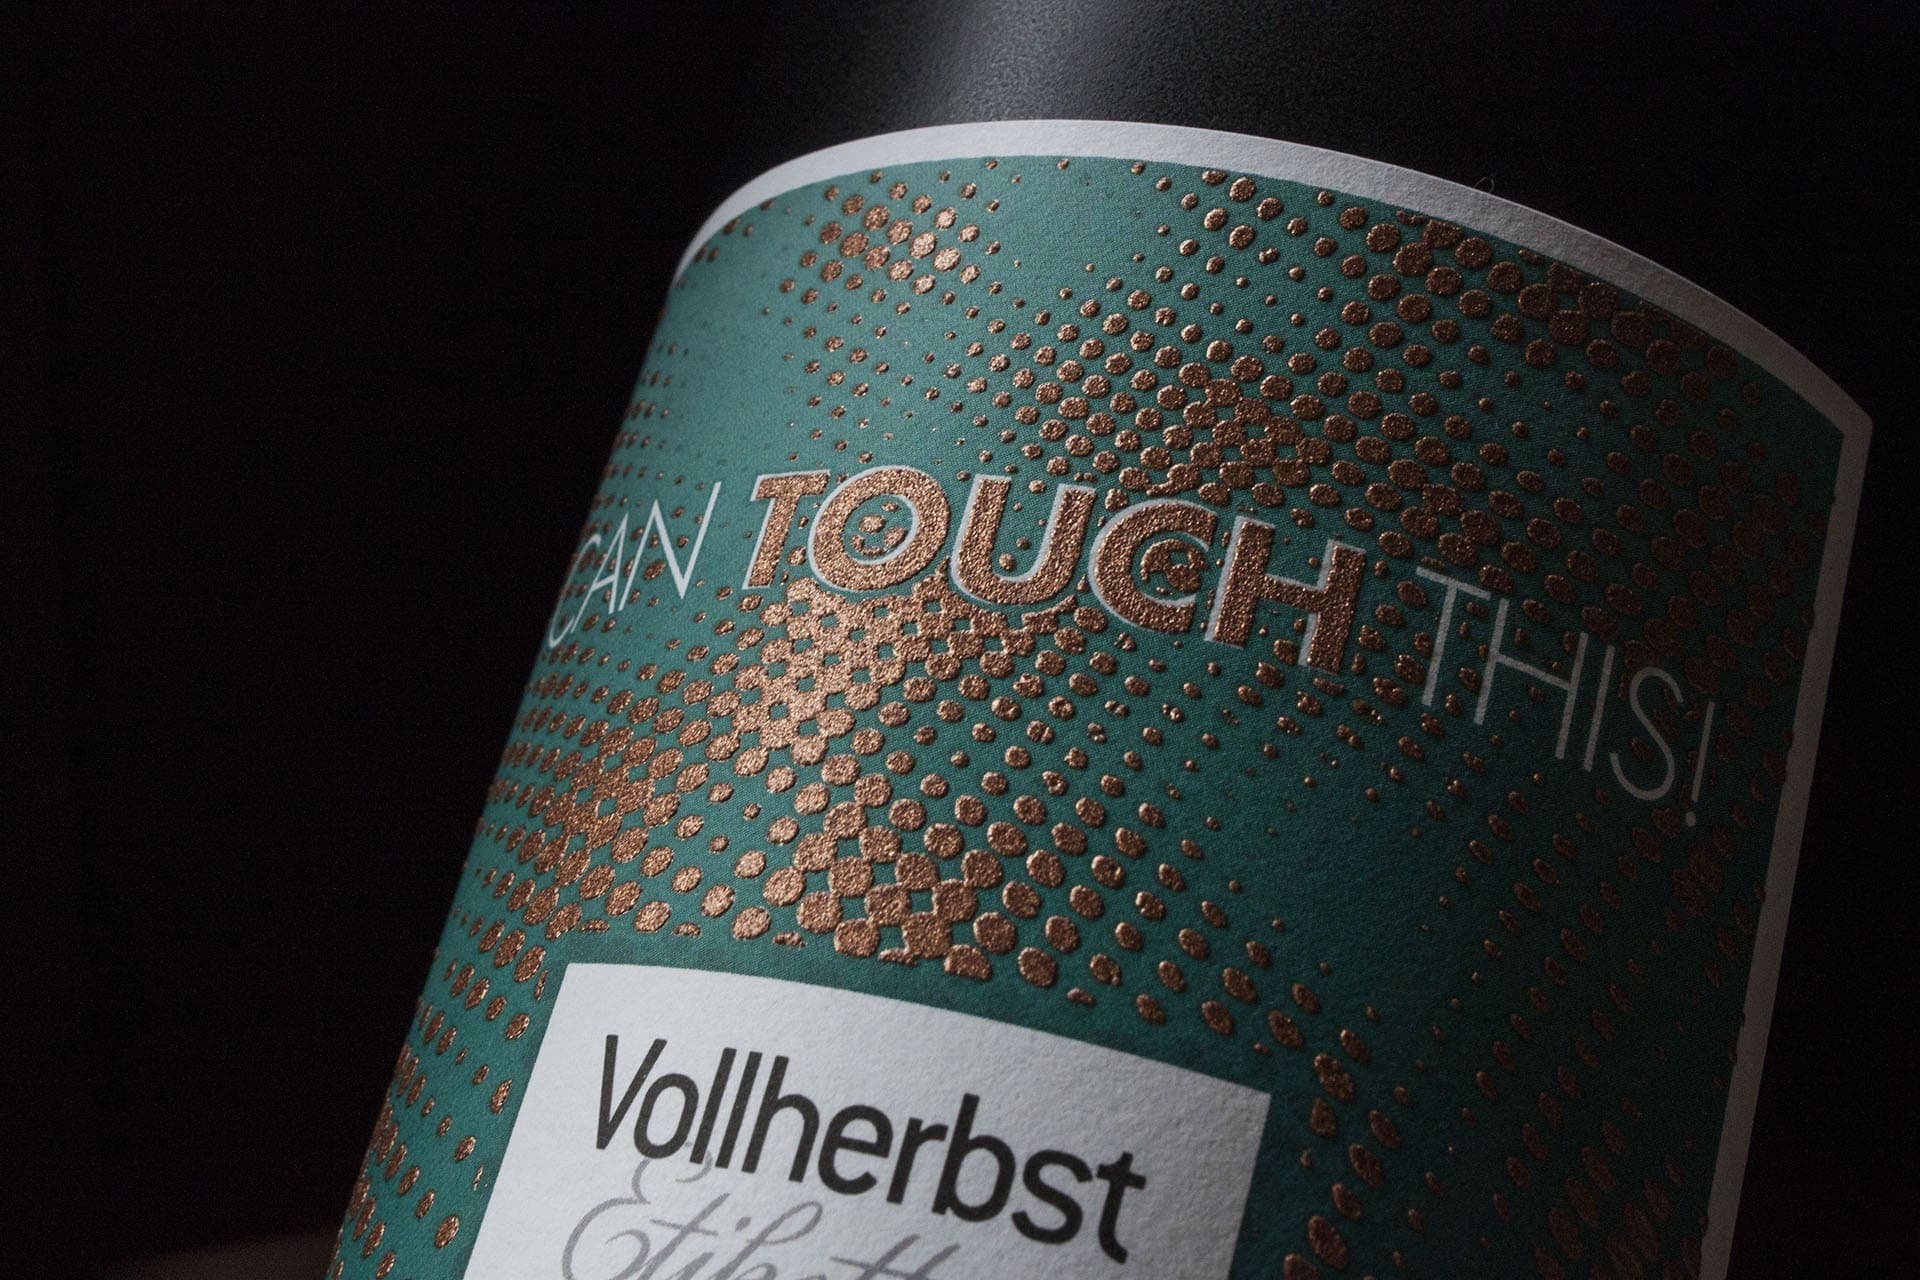 Vollherbst Etiketten Labels Handwerkszeug craft LABEL 04